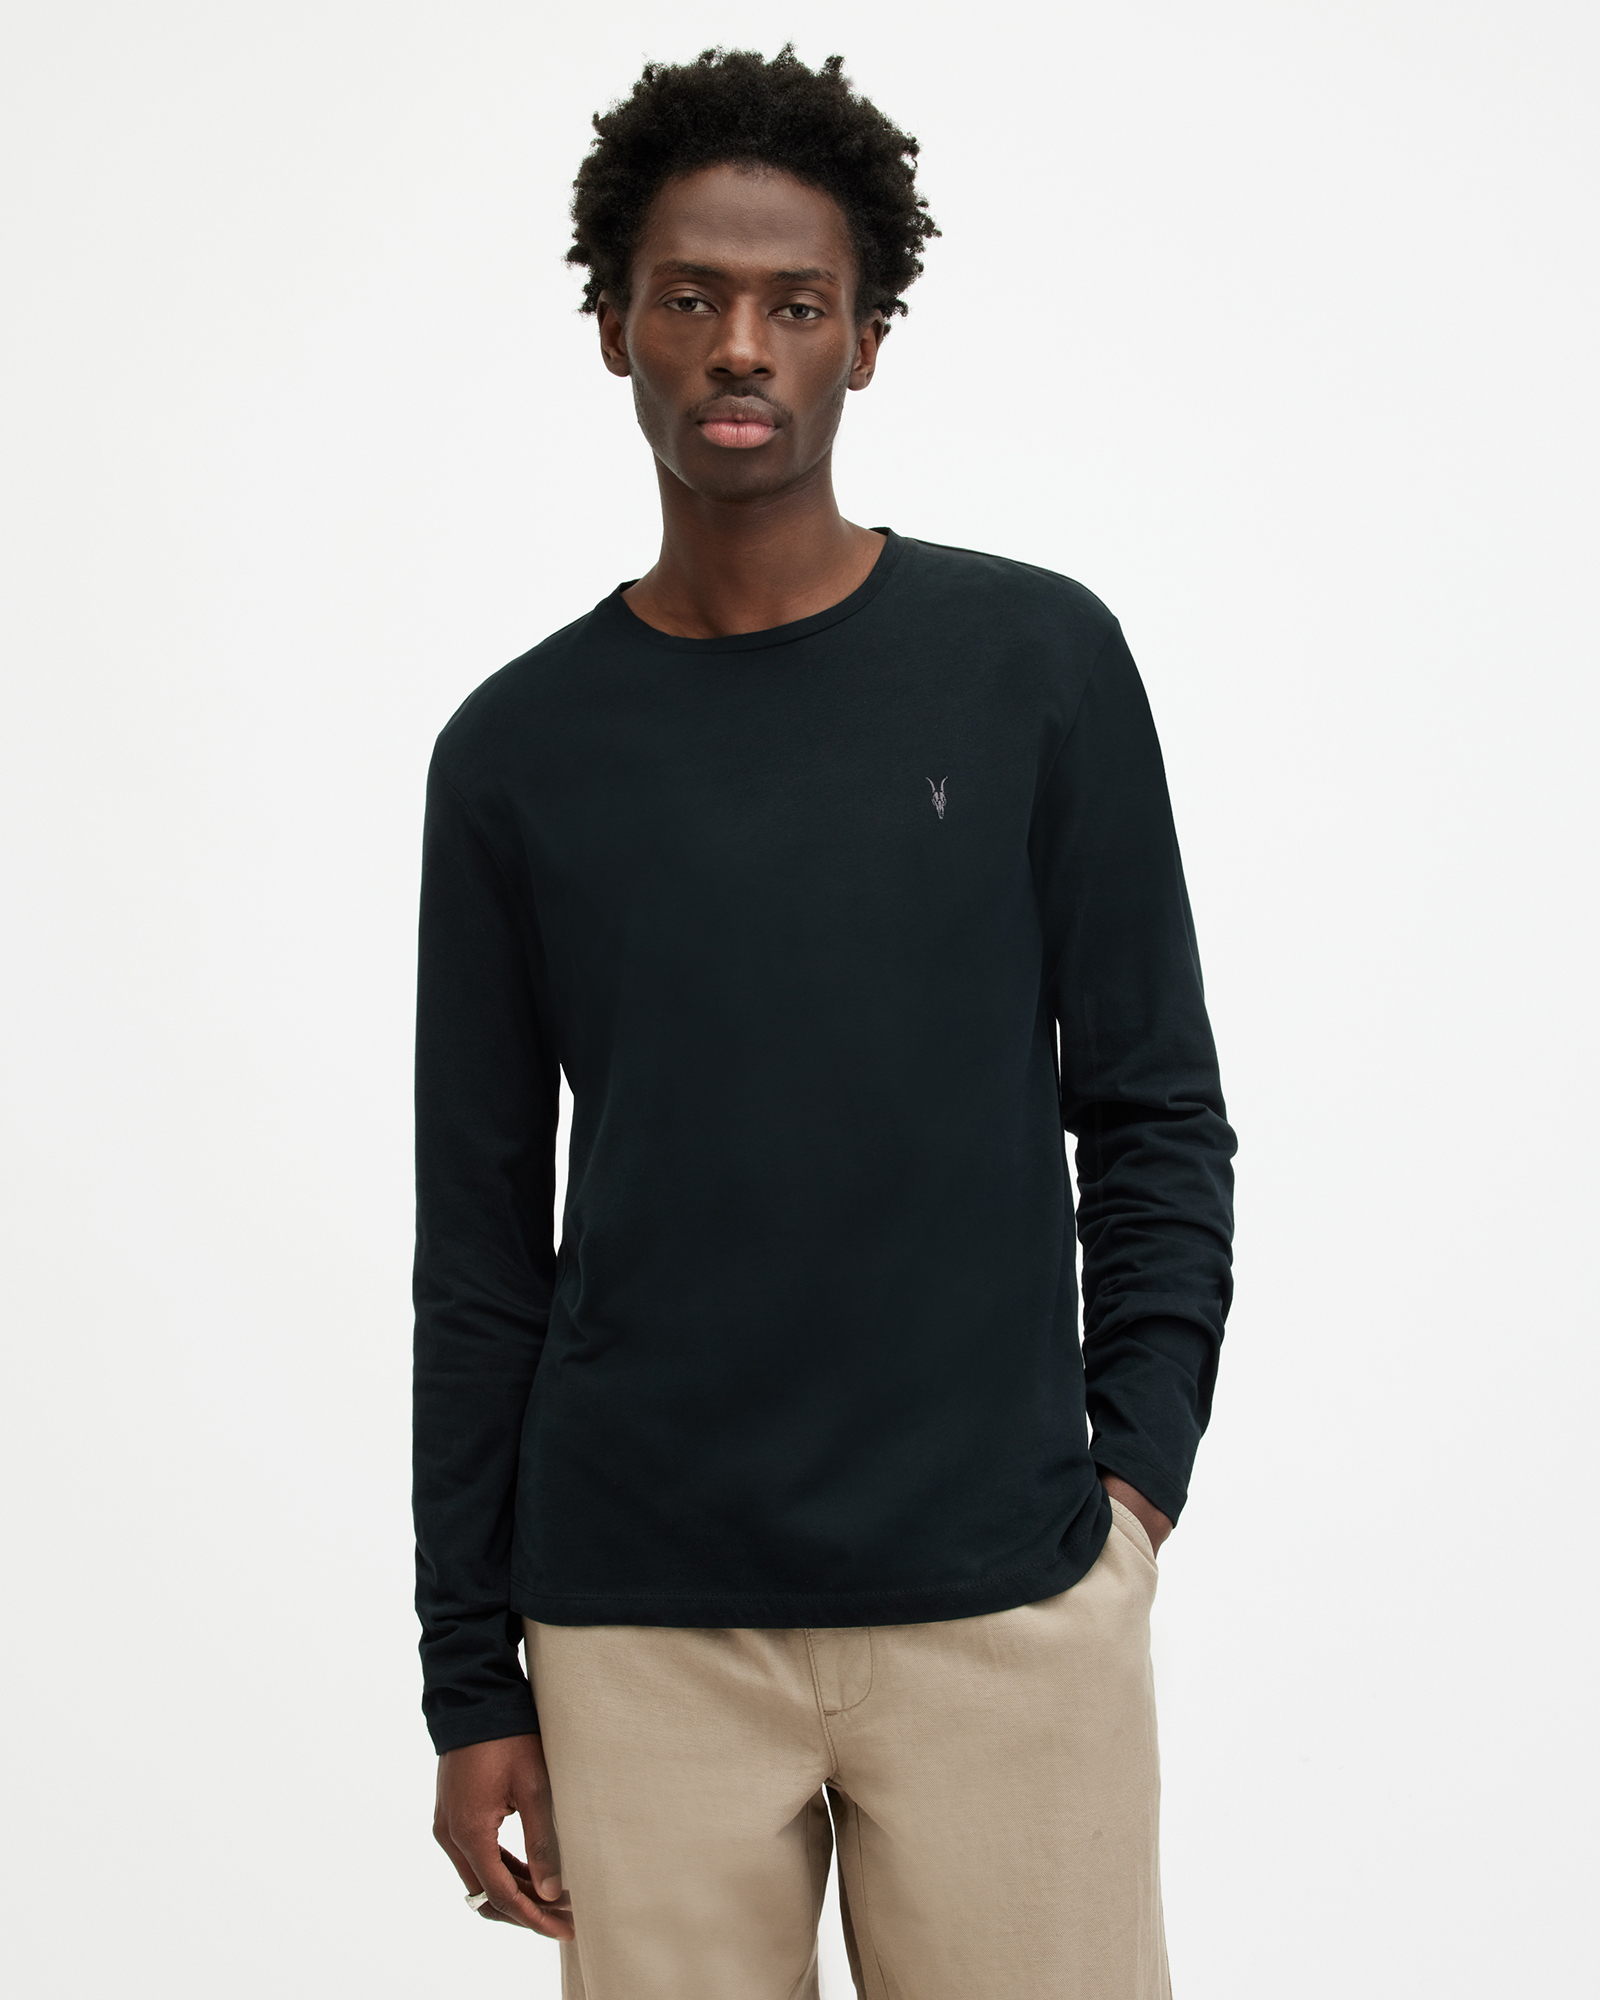 AllSaints Men's Cotton Regular Fit Brace Long Sleeve Tonic Crew T-Shirt, Black, Size: M